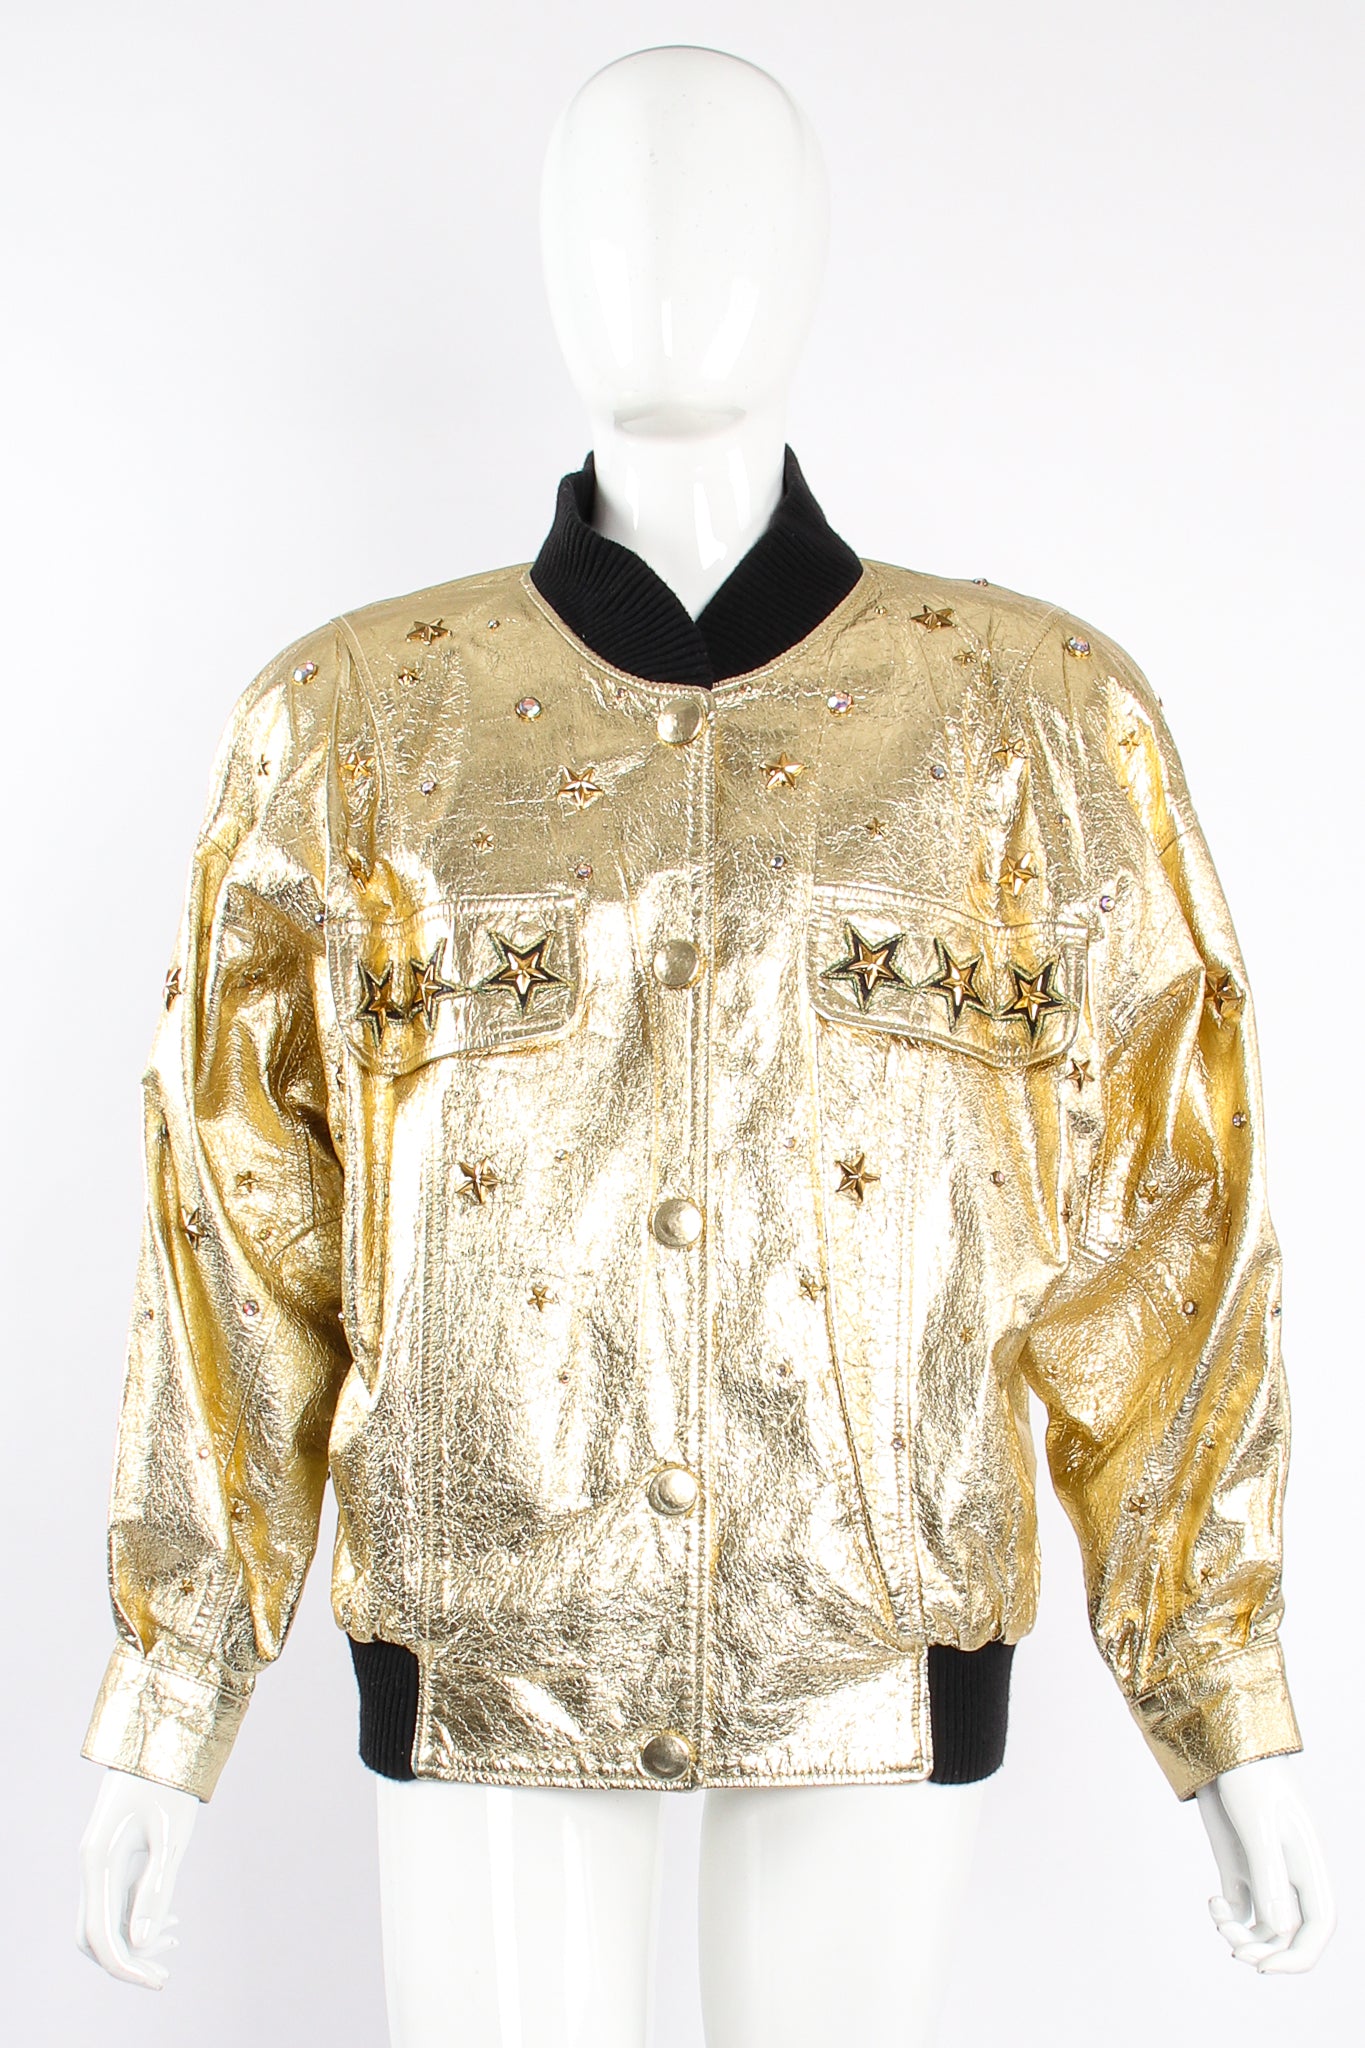 Vintage K.Baumann Studded Gold Leather Bomber Jacket on Mannequin front at Recess Los Angeles